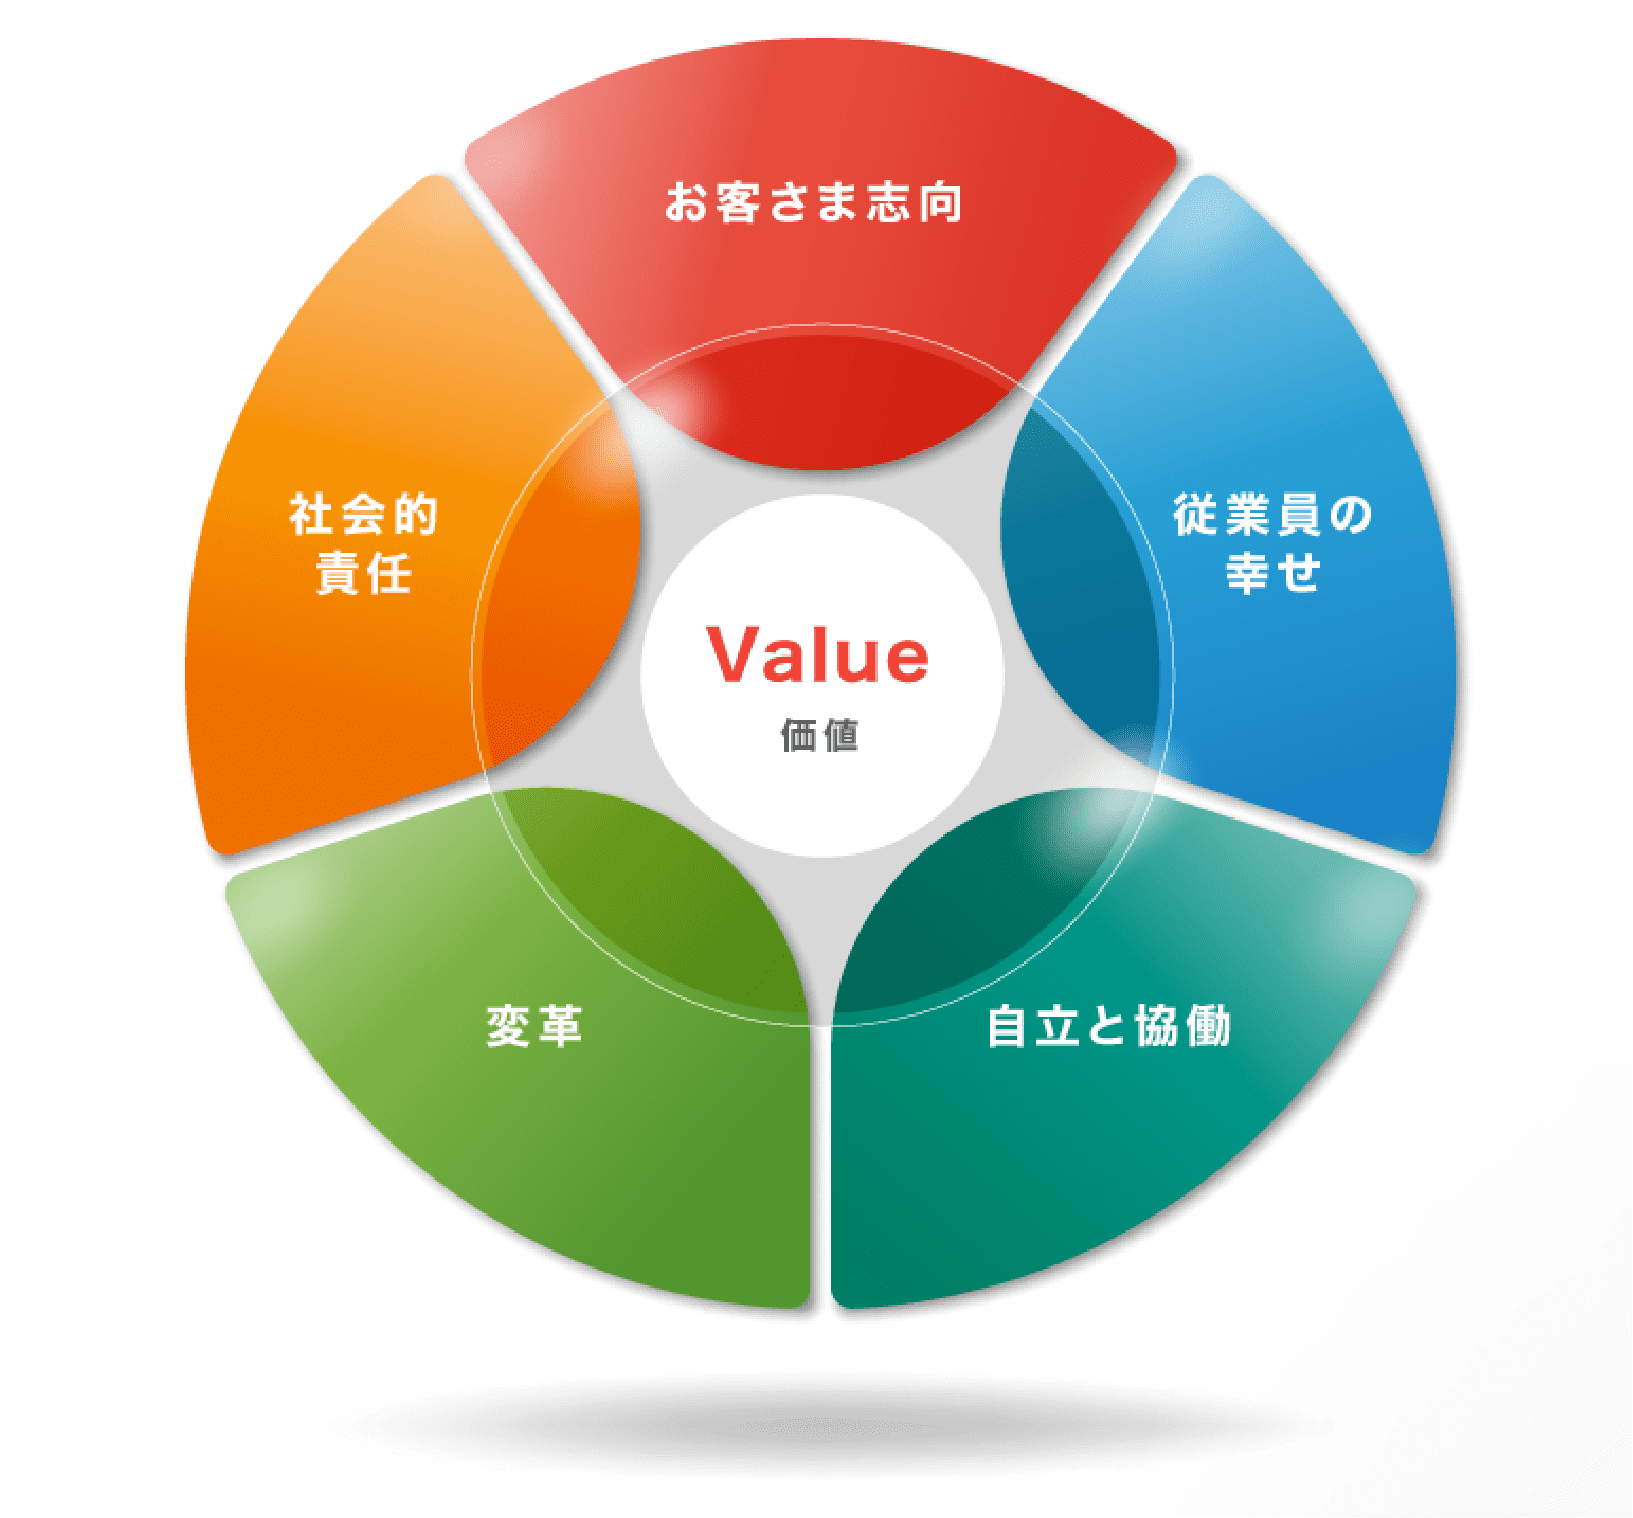 5つの大切にすべき価値観